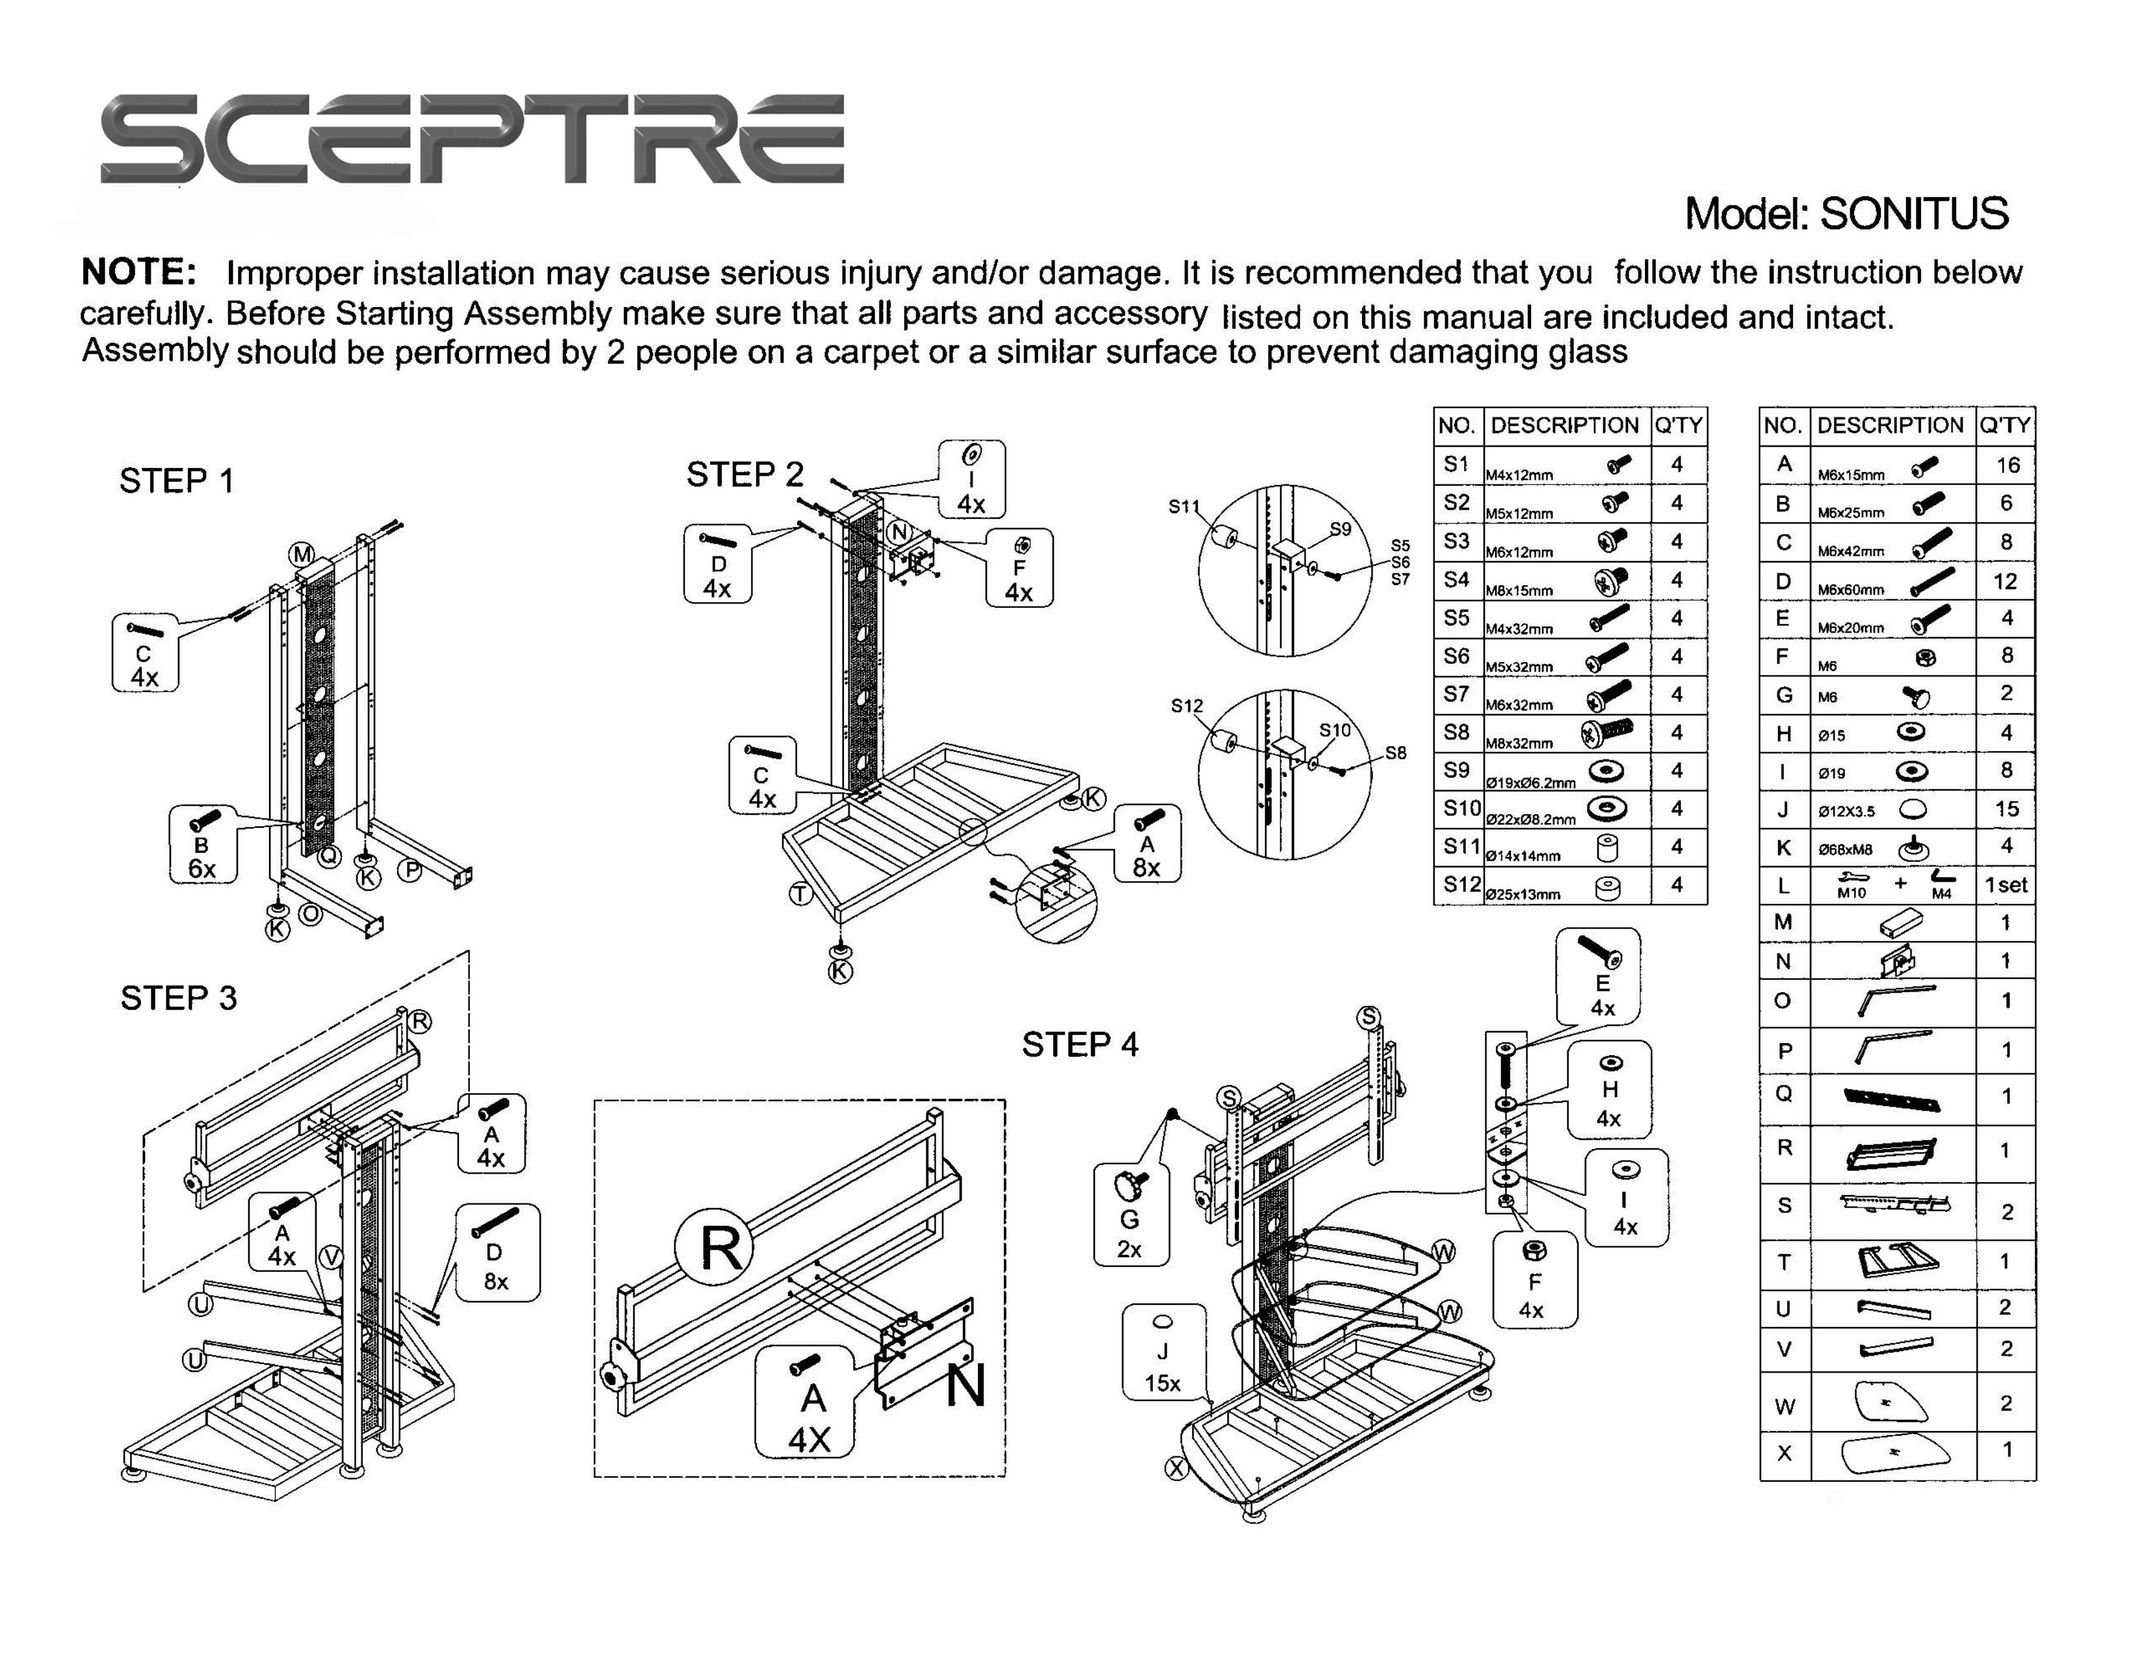 Sceptre Technologies SCEPTRE TV Mount User Manual